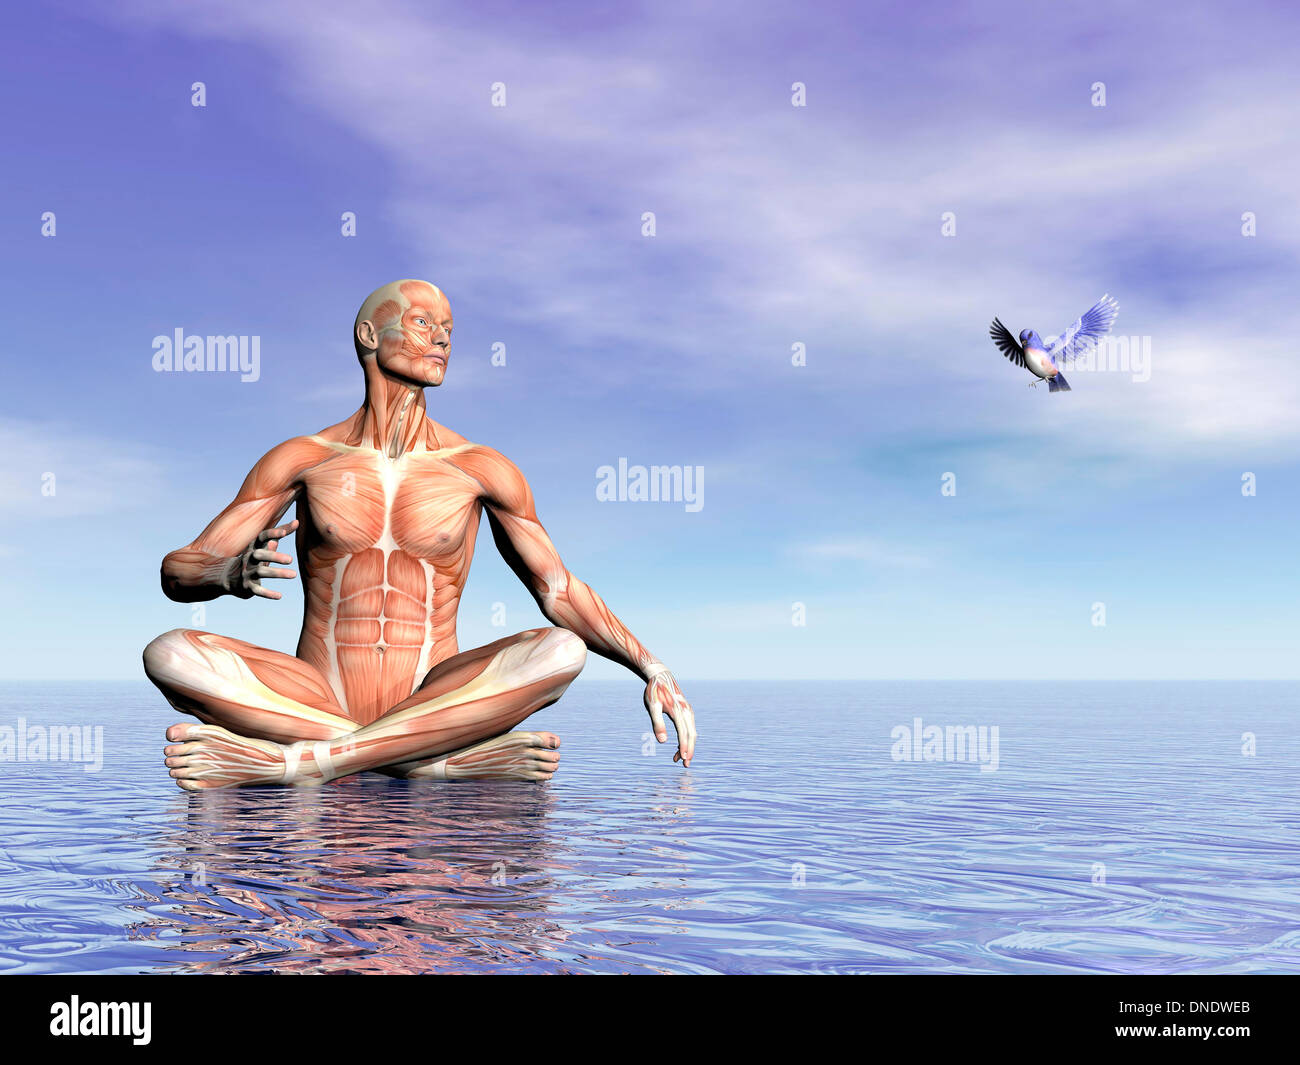 Männliche Muskulatur im Lotussitz auf dem Wasser beim Betrachten eines schönen Vöglein fliegen. Stockfoto